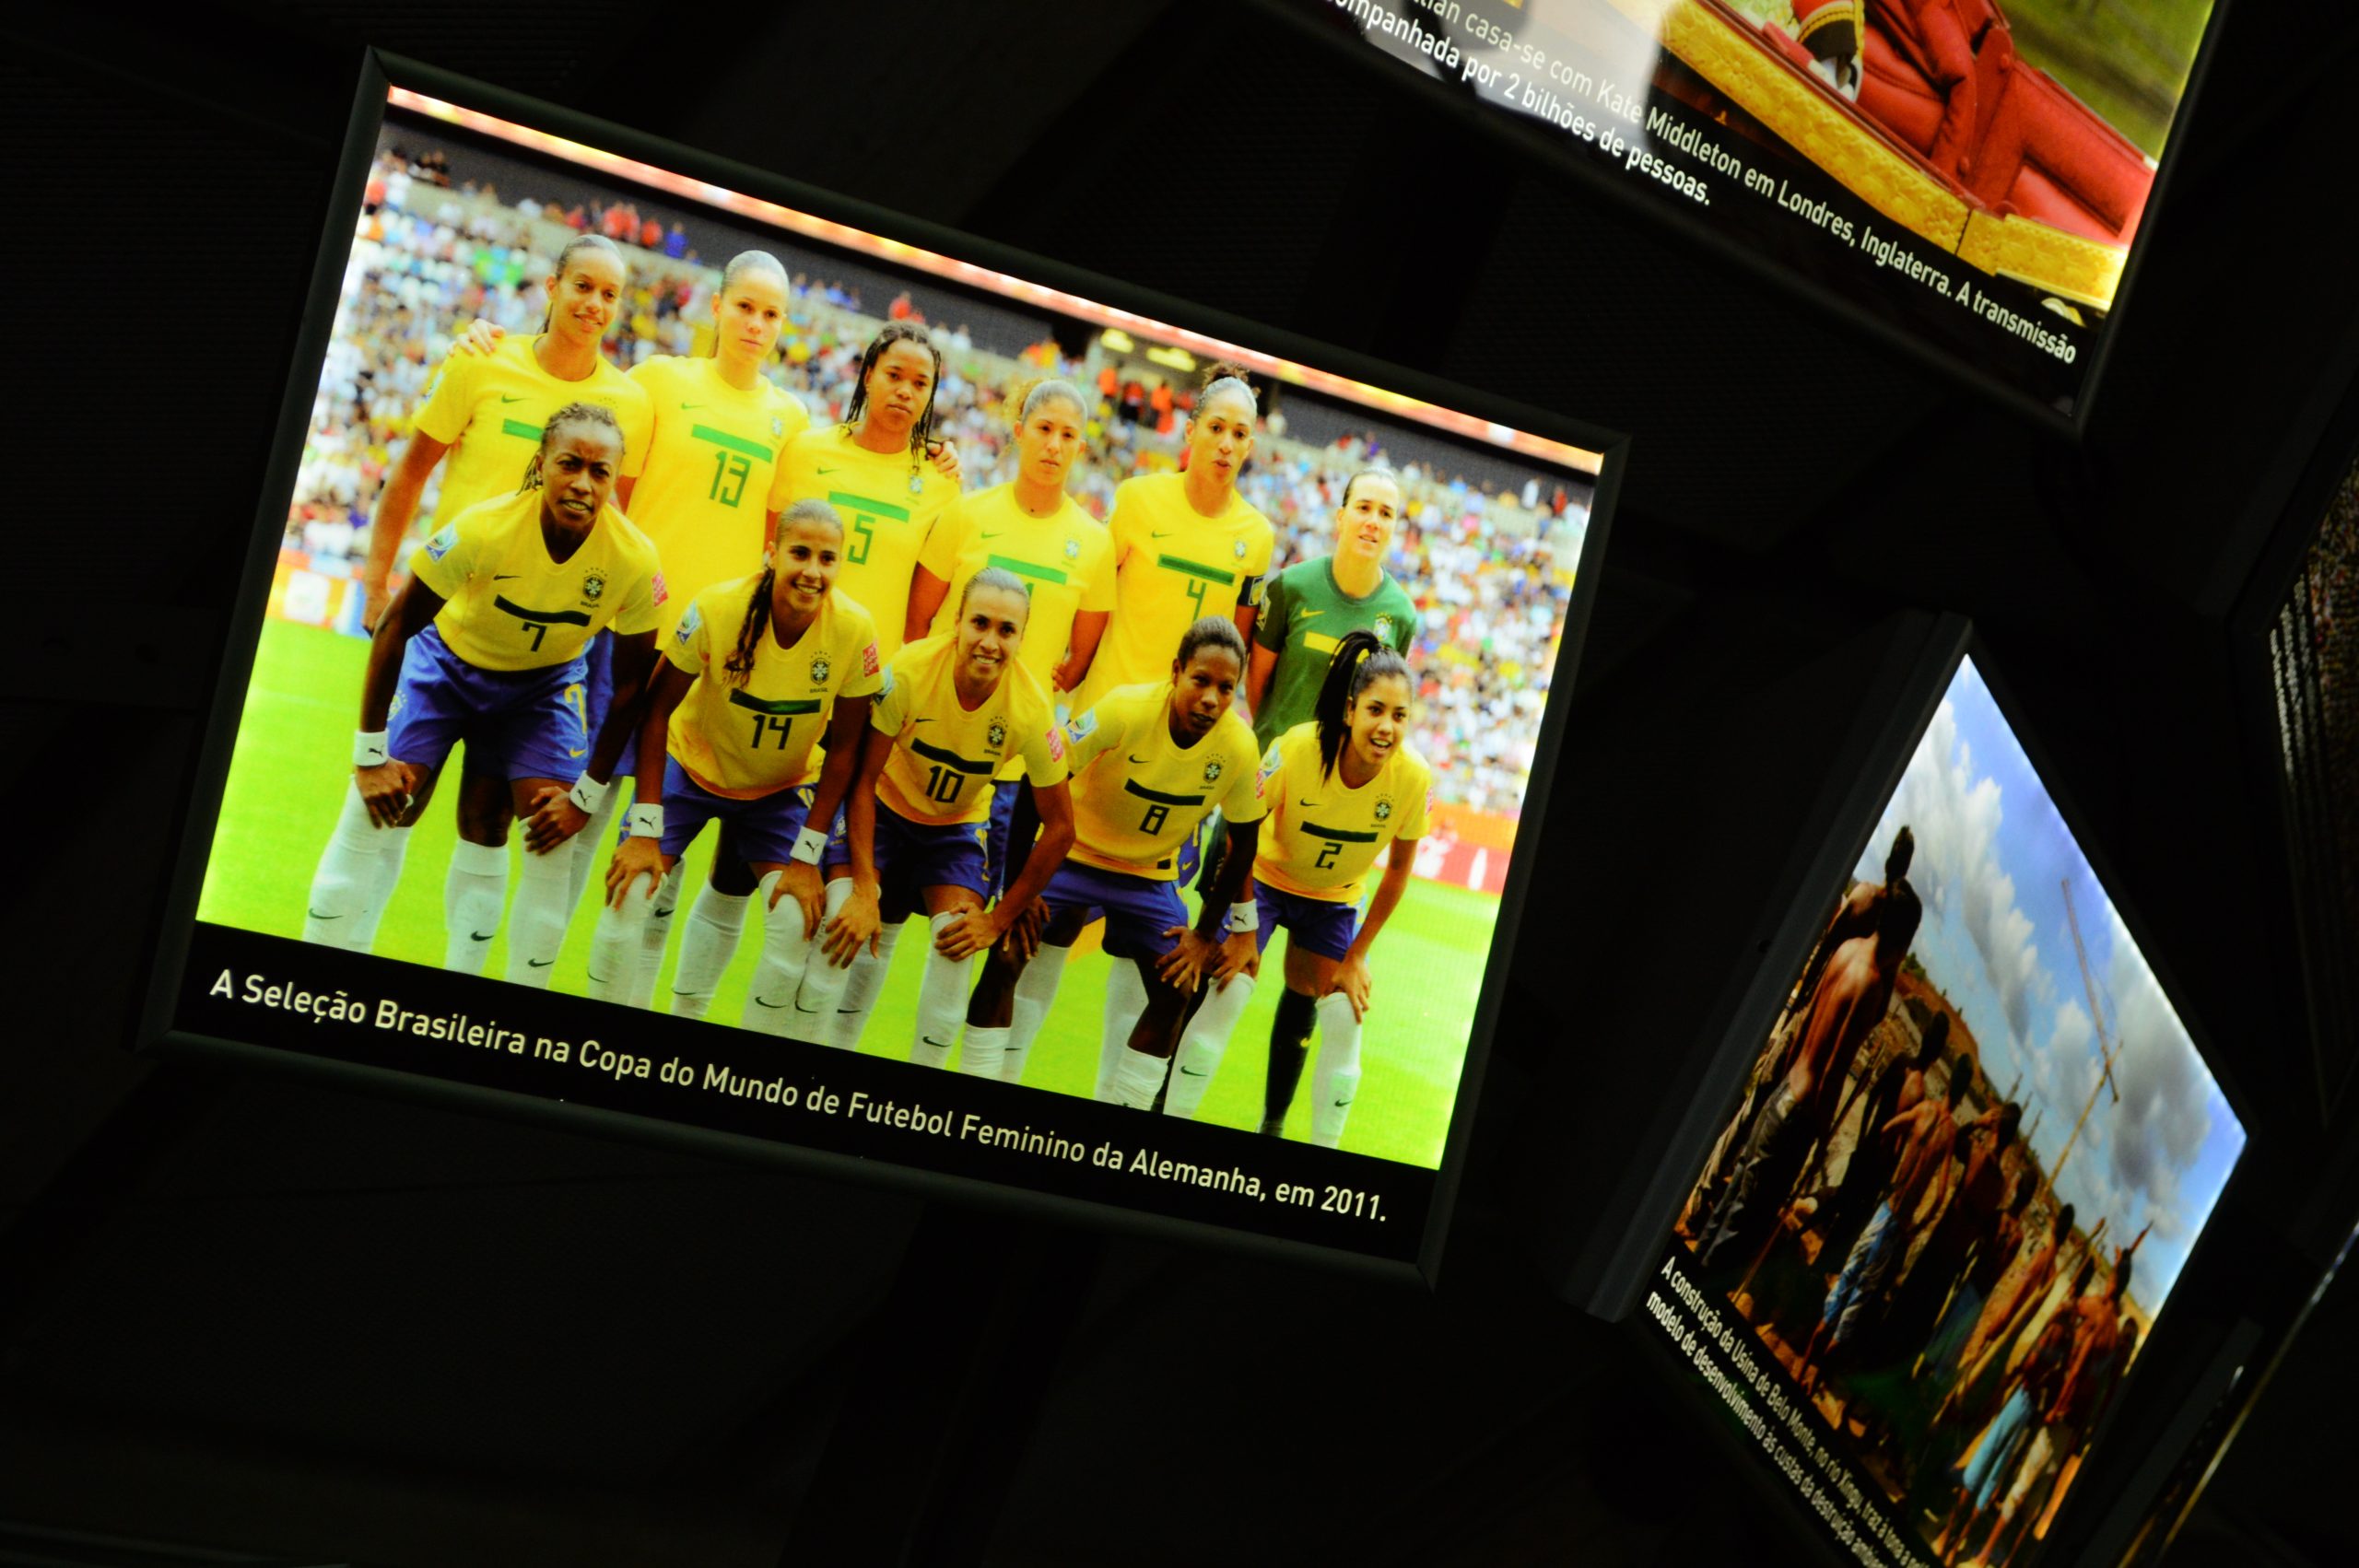 Fotografia de uma imagem da Sala Copas do Mundo que mostra a Seleção Brasileira Feminina de Futebol, em pose do grupo antes de iniciar uma partida.